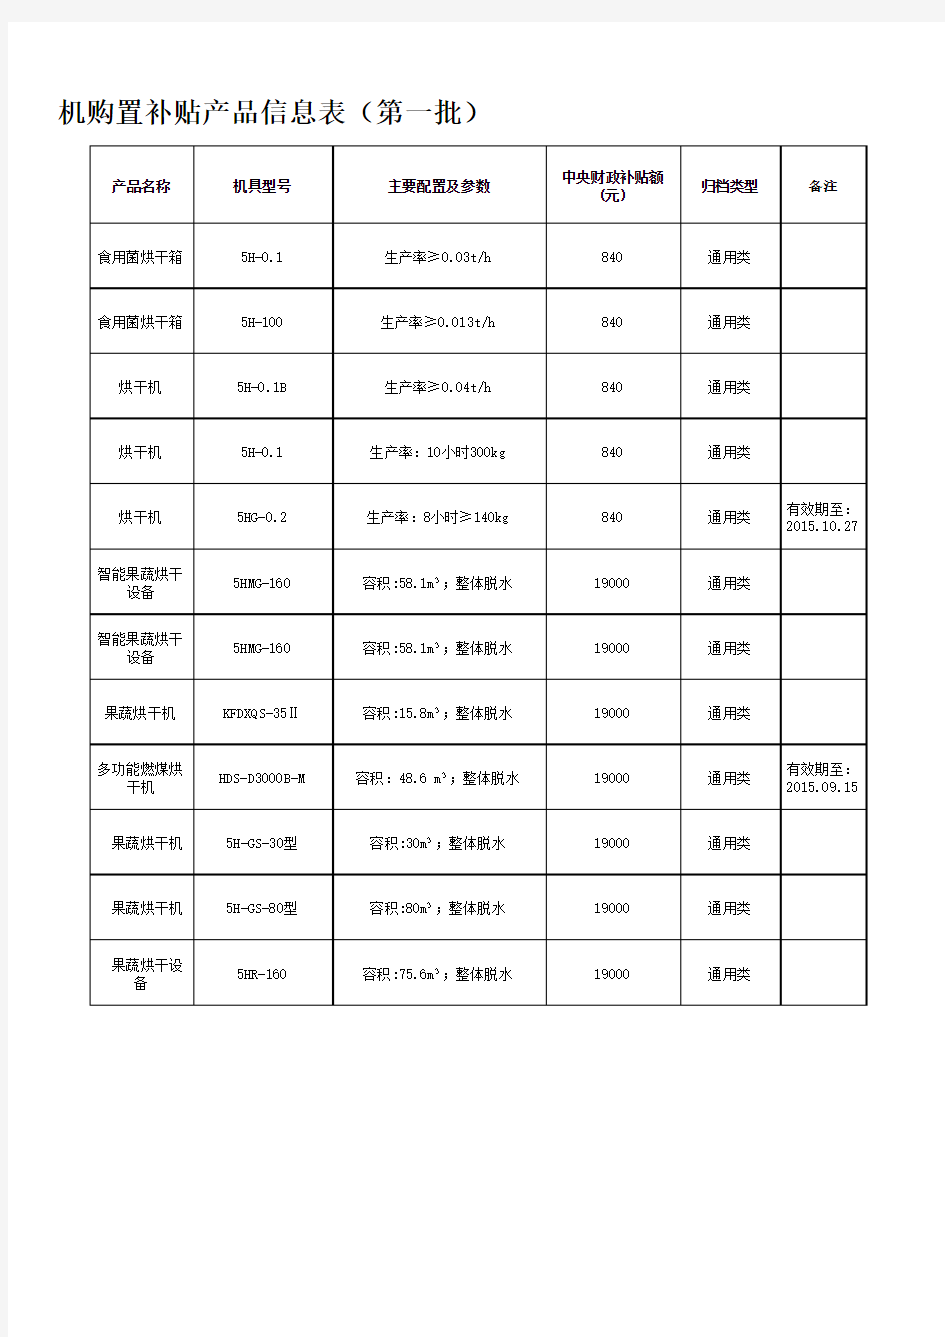 河南省2015年农机购置补贴产品信息表(第一批)